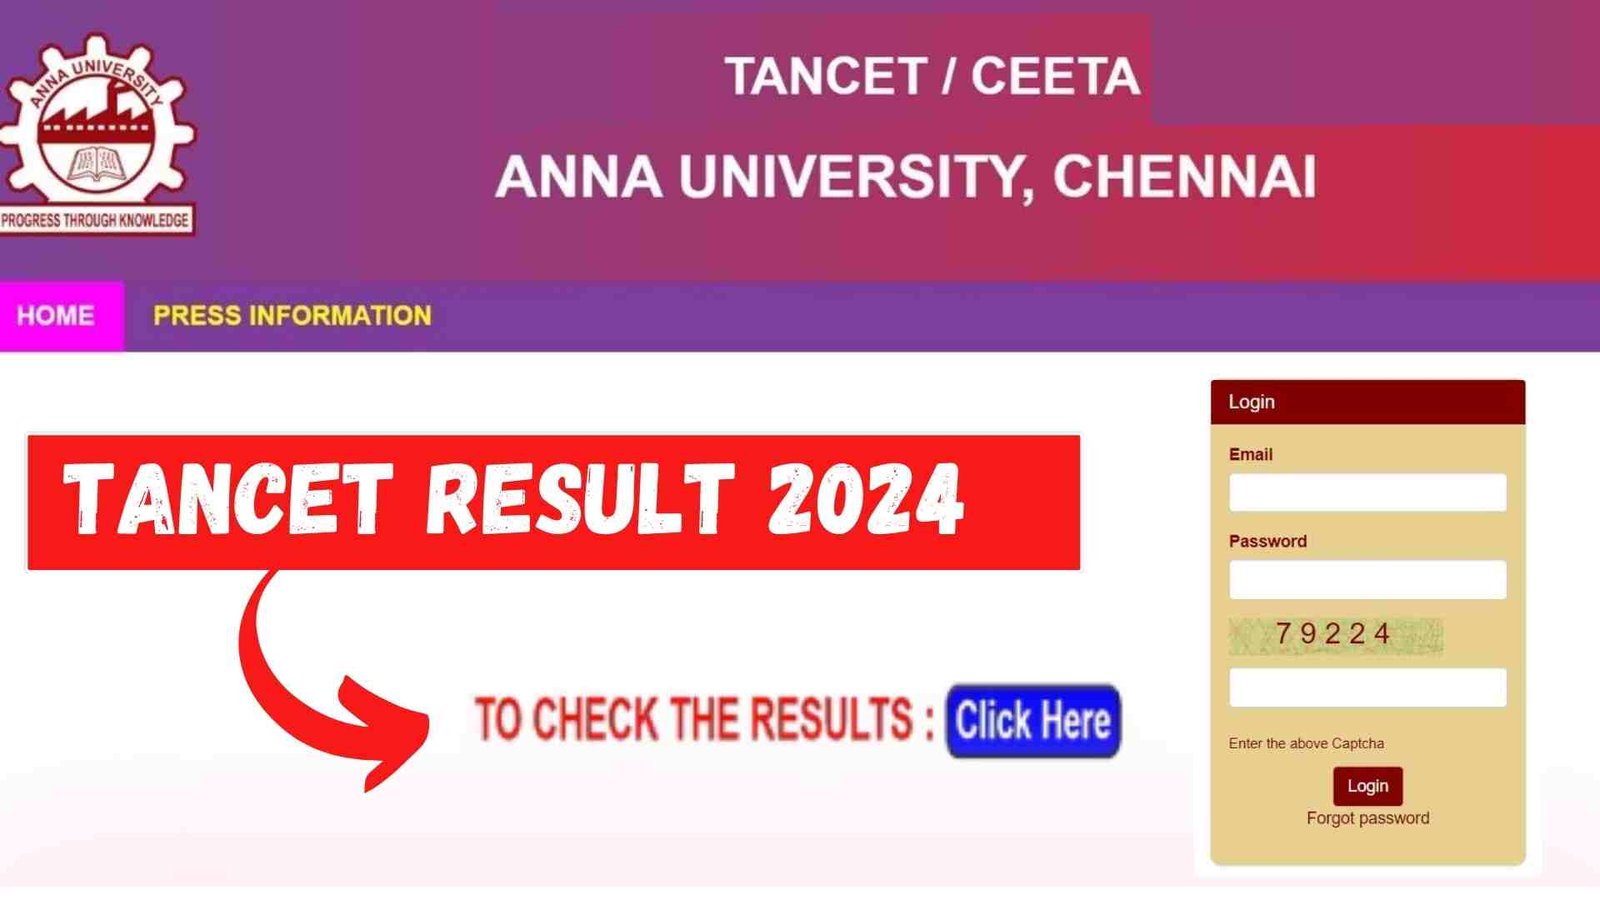 TANCET Result 2024 Link, Download Scorecard, Rank List, Cut Off Marks @ tancet.annauniv.edu